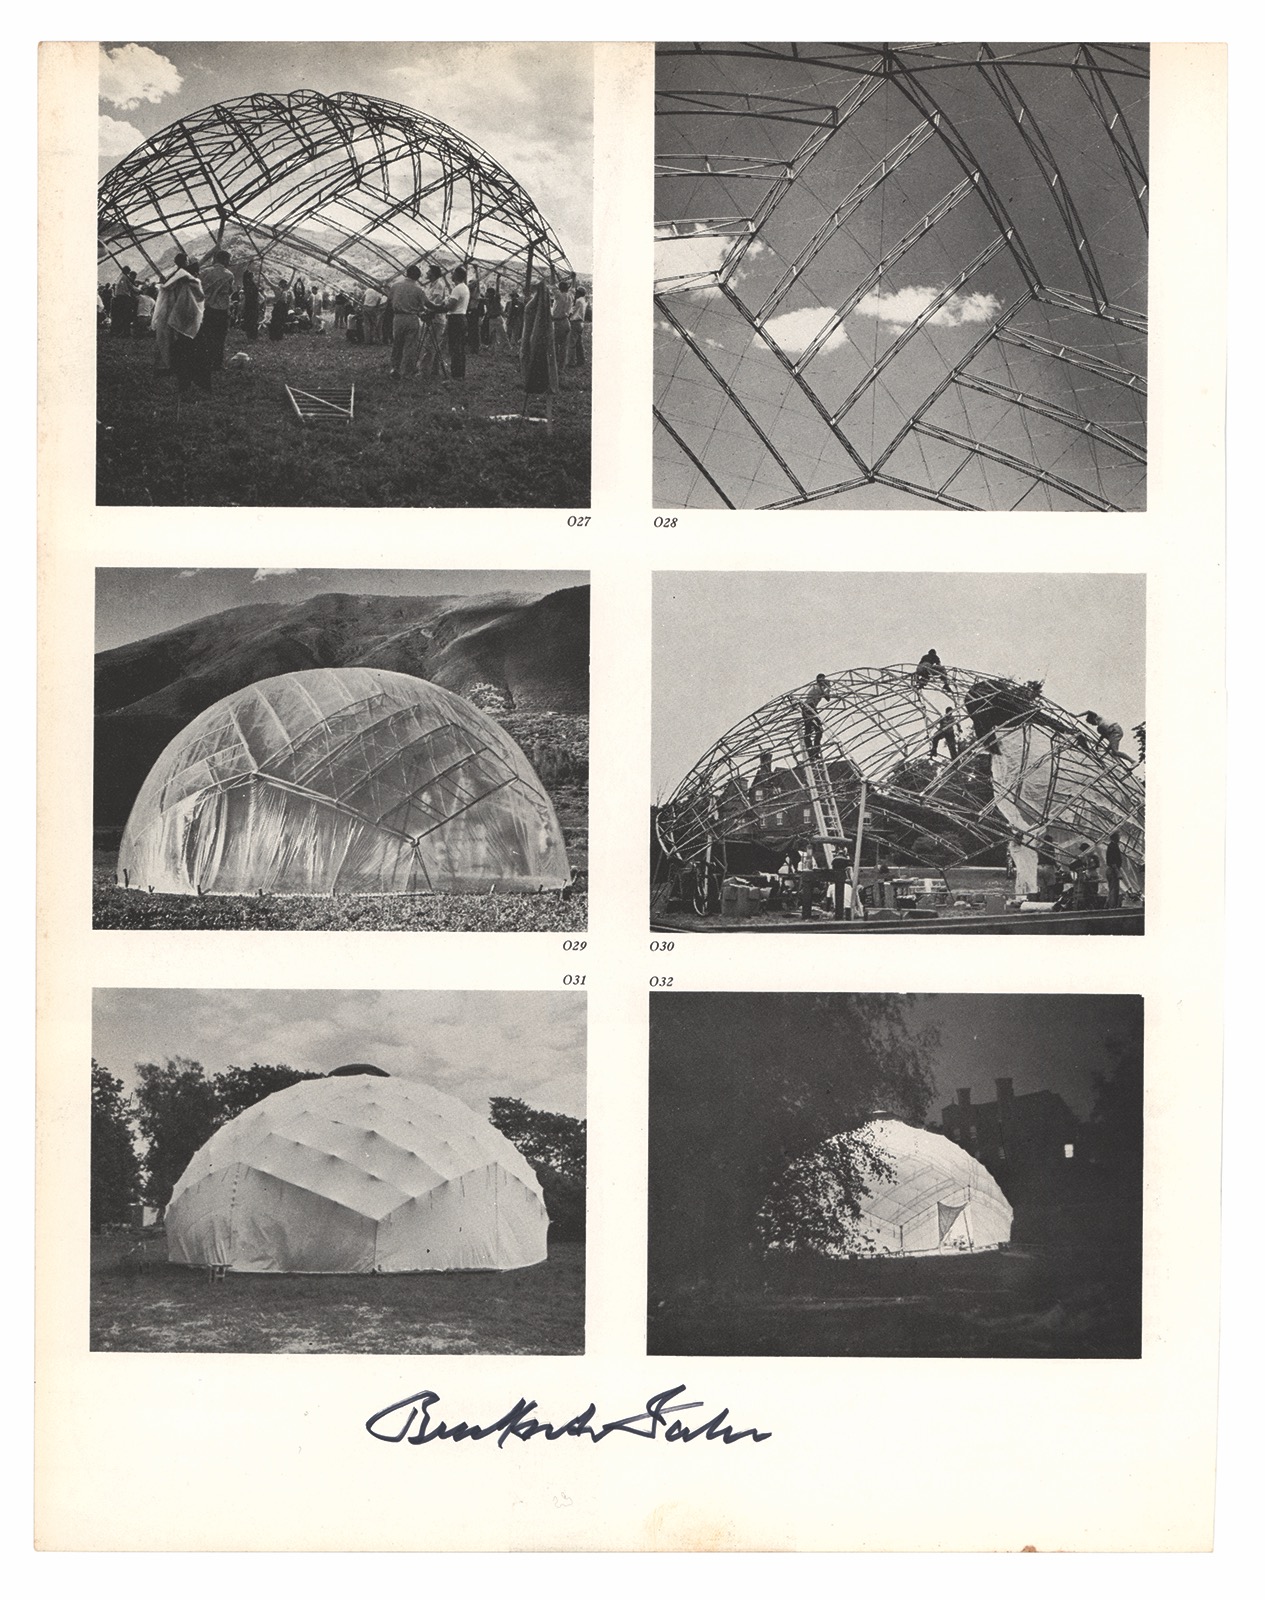 Lot #415 Buckminster Fuller Signed Photograph - Image 1